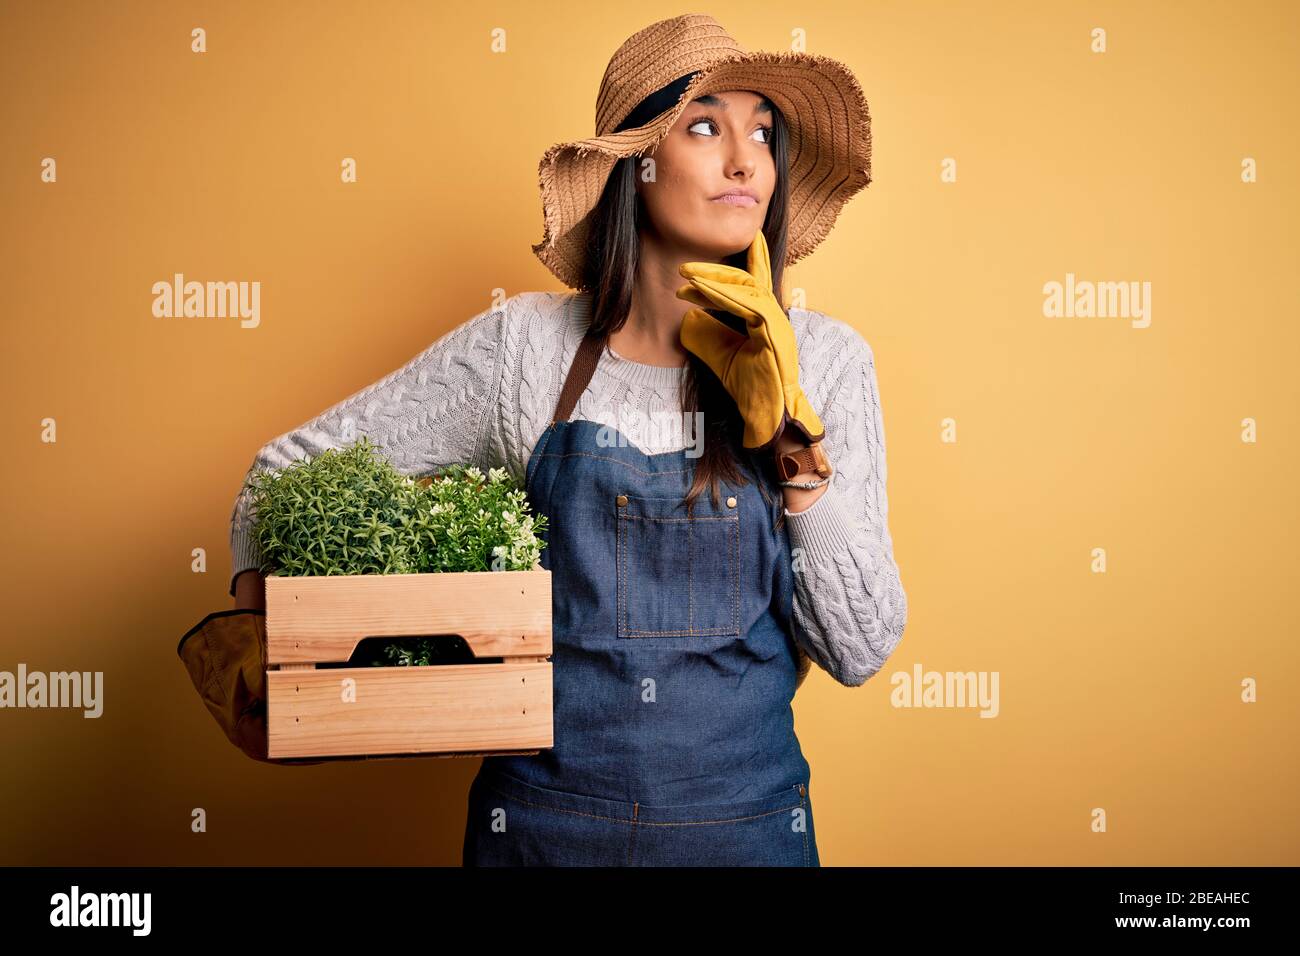 Joven hermosa mujer jardinera morena usando delantal y sombrero sosteniendo  caja con plantas cara seria pensando en la pregunta, idea muy confusa  Fotografía de stock - Alamy